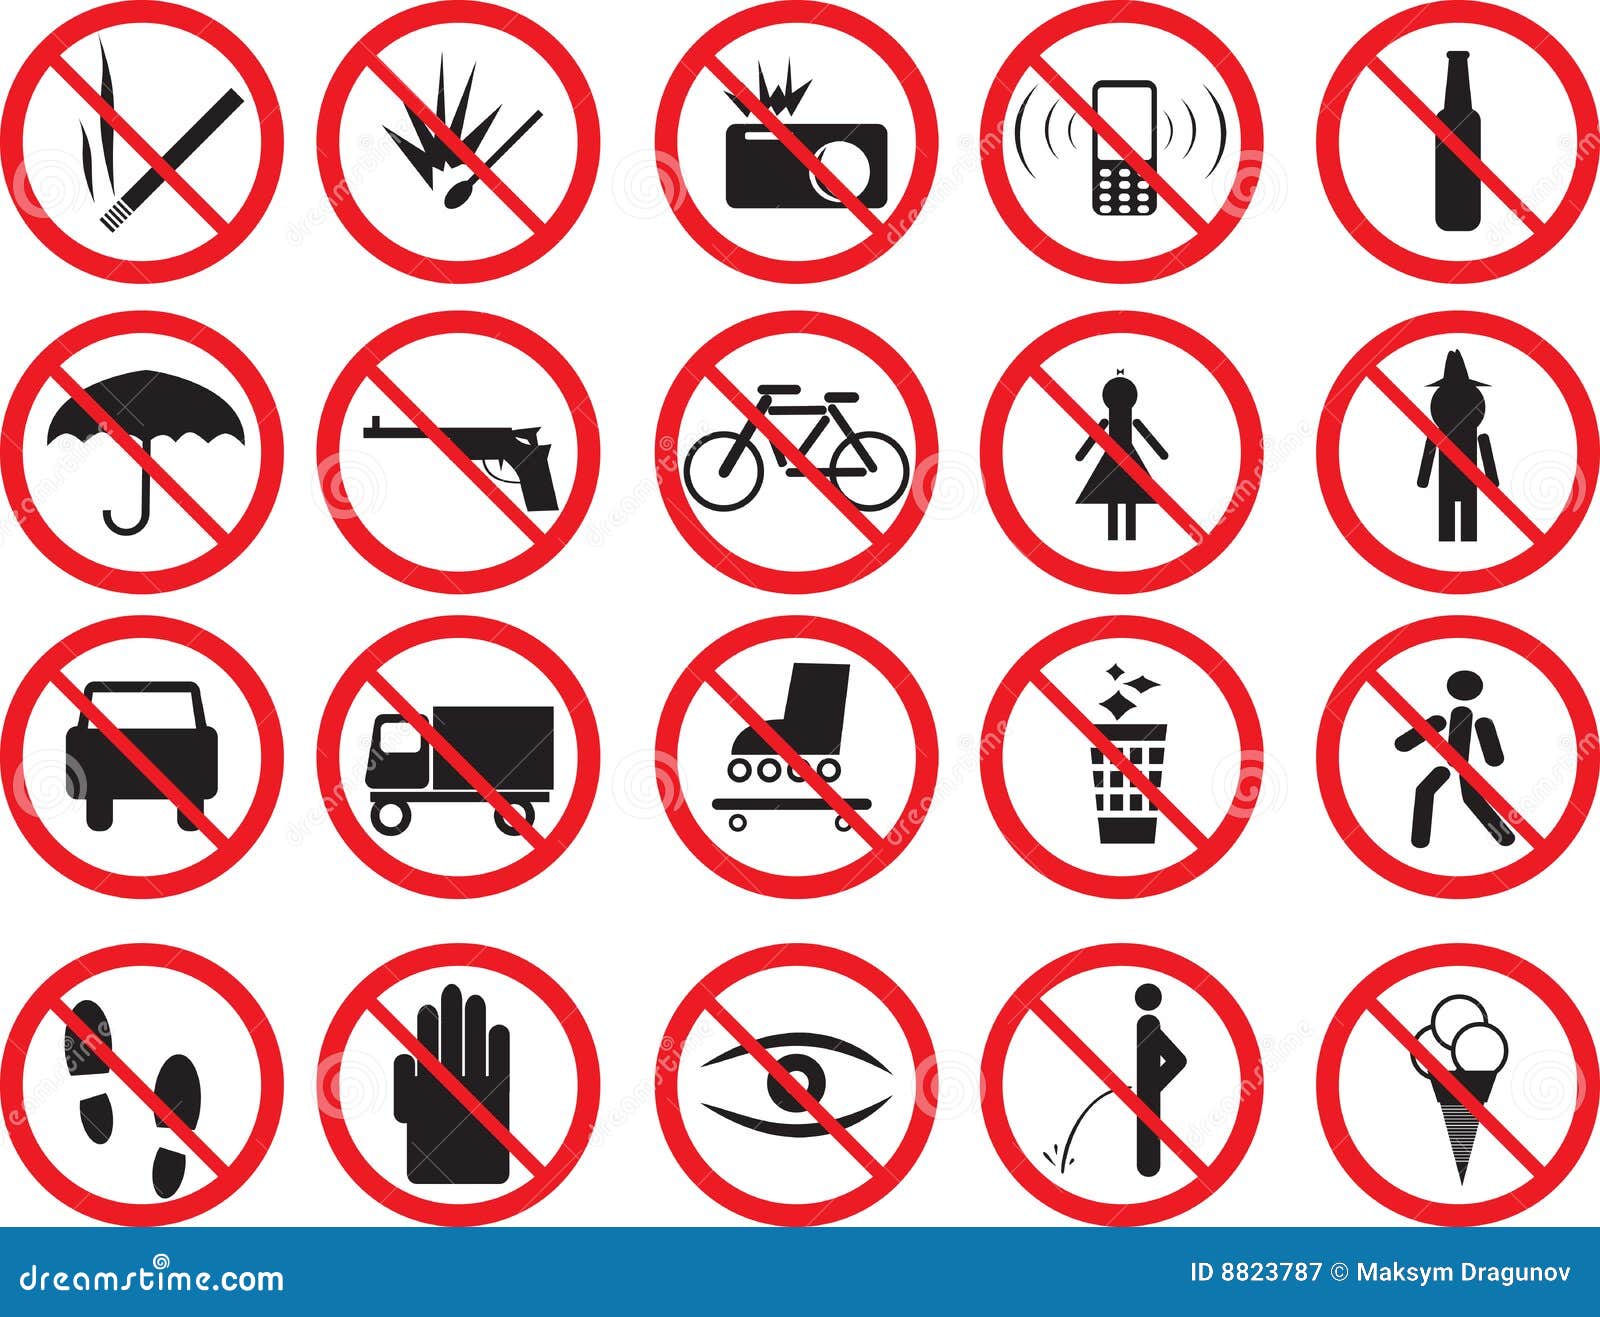 Знак запрета. Запрещающие знаки в доме. Предупреждающие и запрещающие знаки поведения в обществе. Запрещающие знаки для аттракционов. Запреты в жизни ребенка